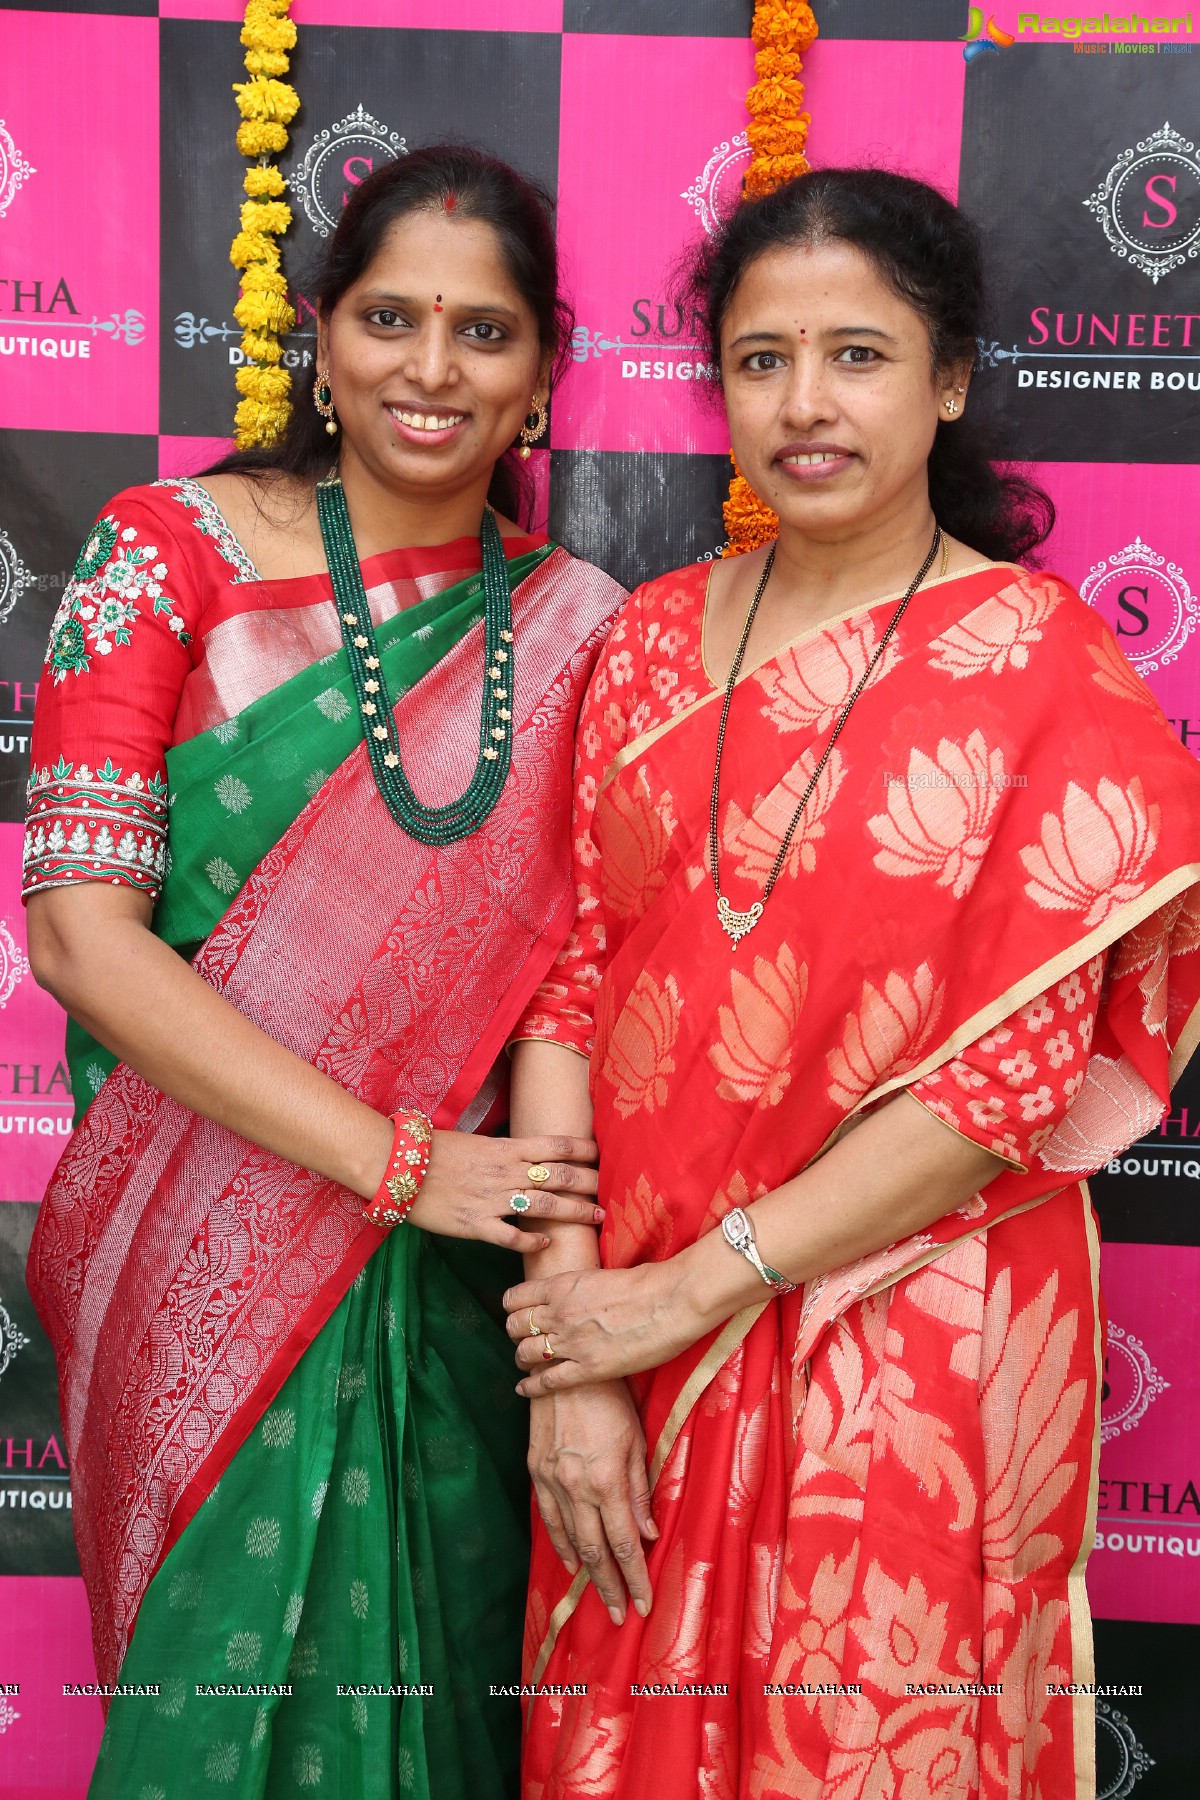 Suneetha Designer Boutique Anniversary Exhibition & Sale at Avanthi Nagar, Hyderguda, Hyderabad